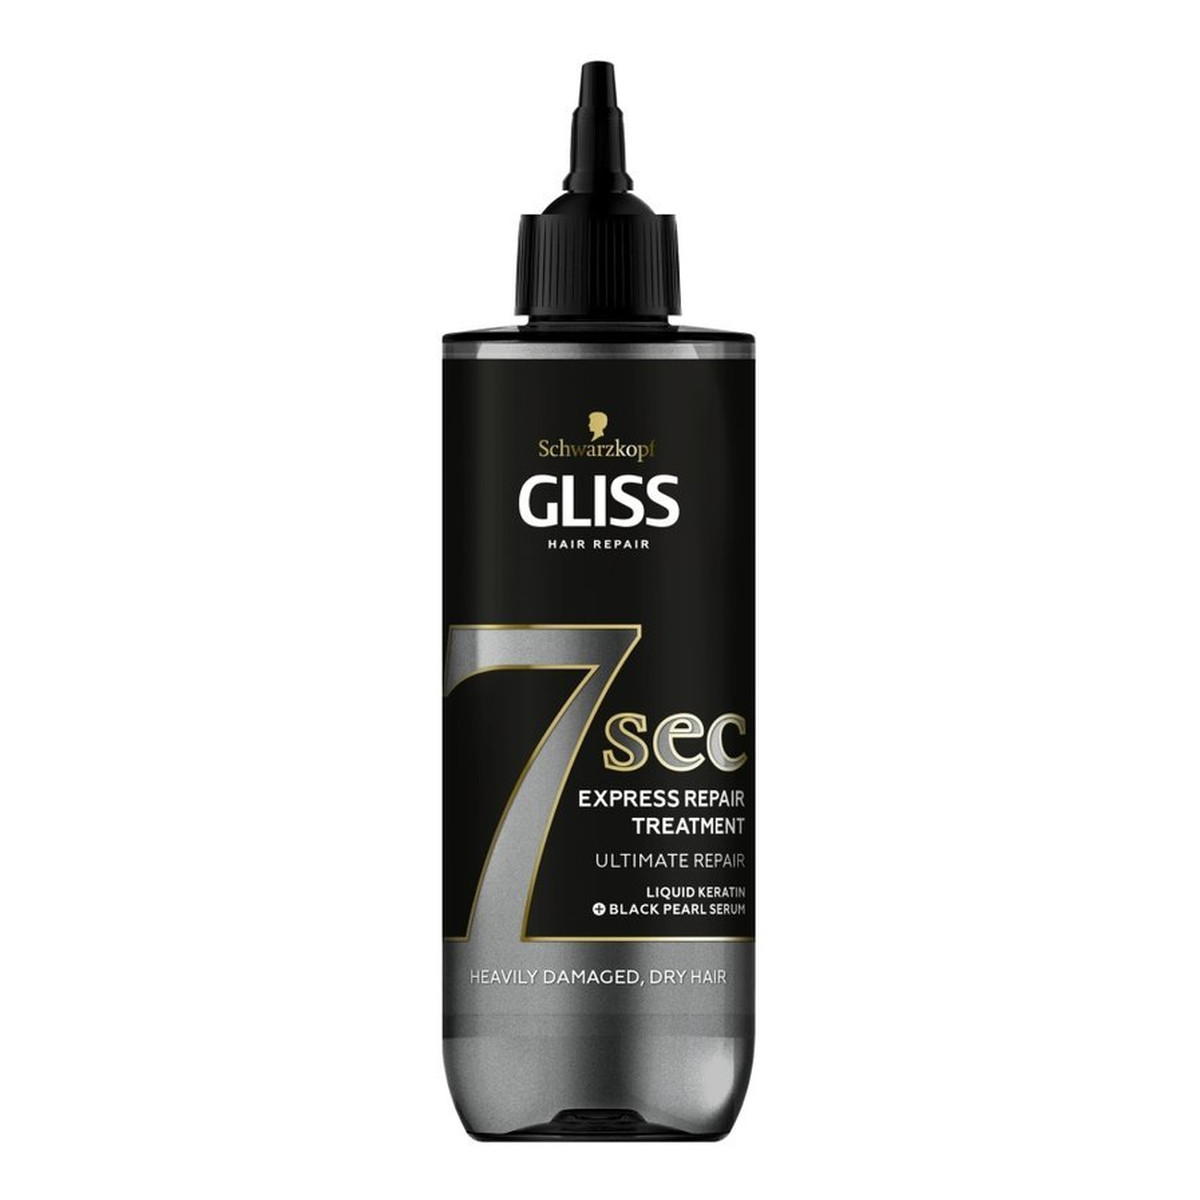 Gliss 7sec Express Repair Treatment Ultimate Repair ekspresowa kuracja do włosów odbudowująca i wzmacniająca 200ml